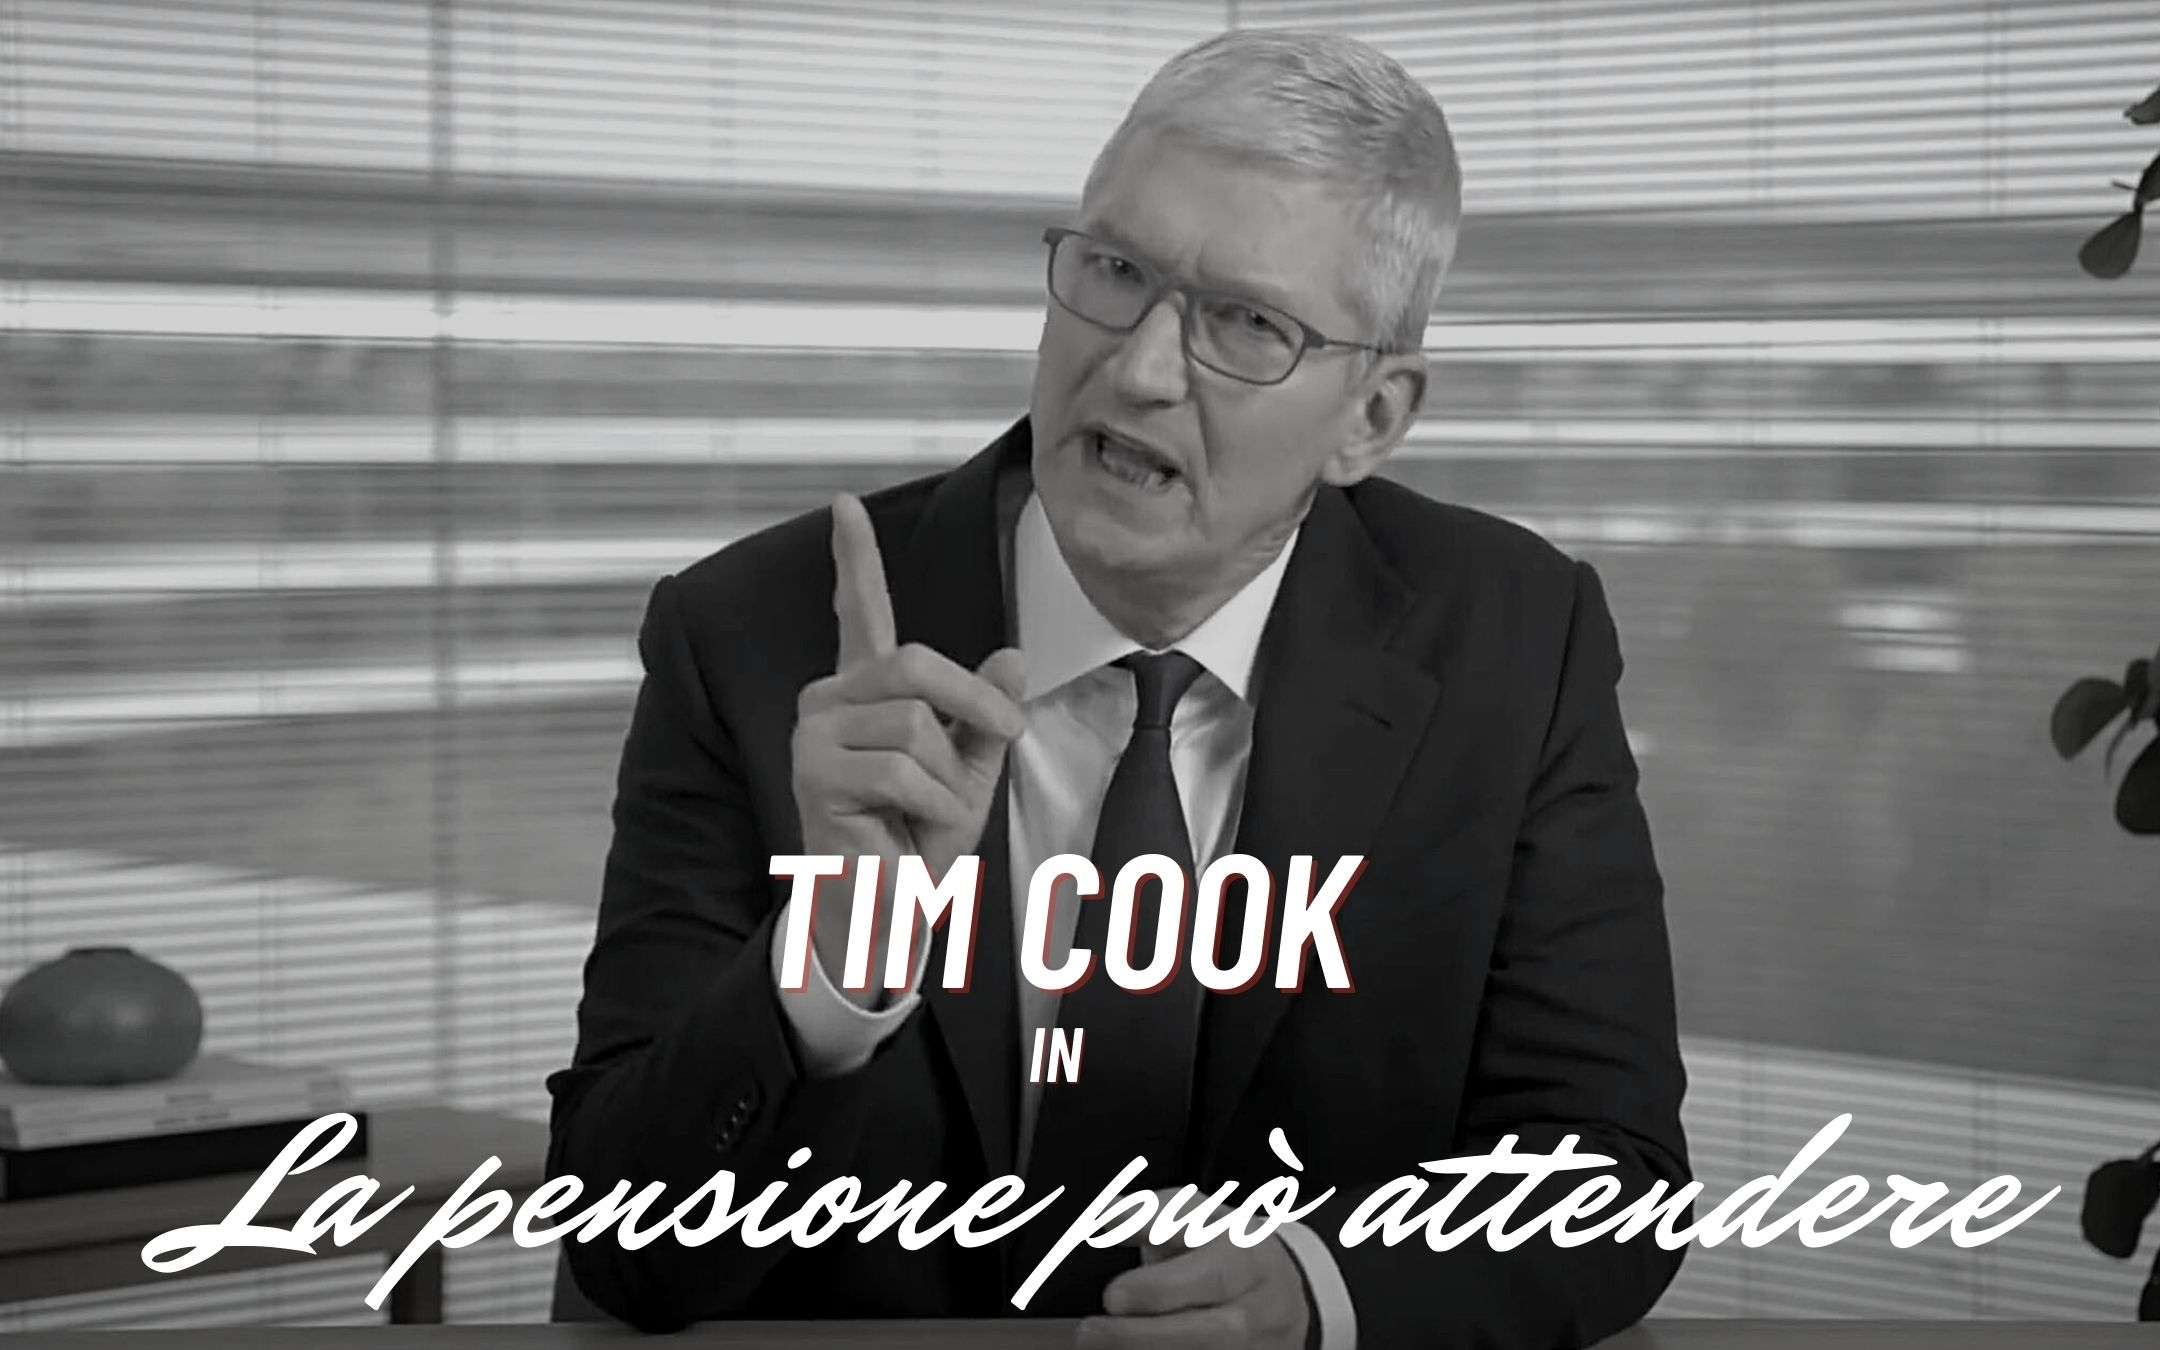 Tim Cook: la pensione può attendere, ecco perchè